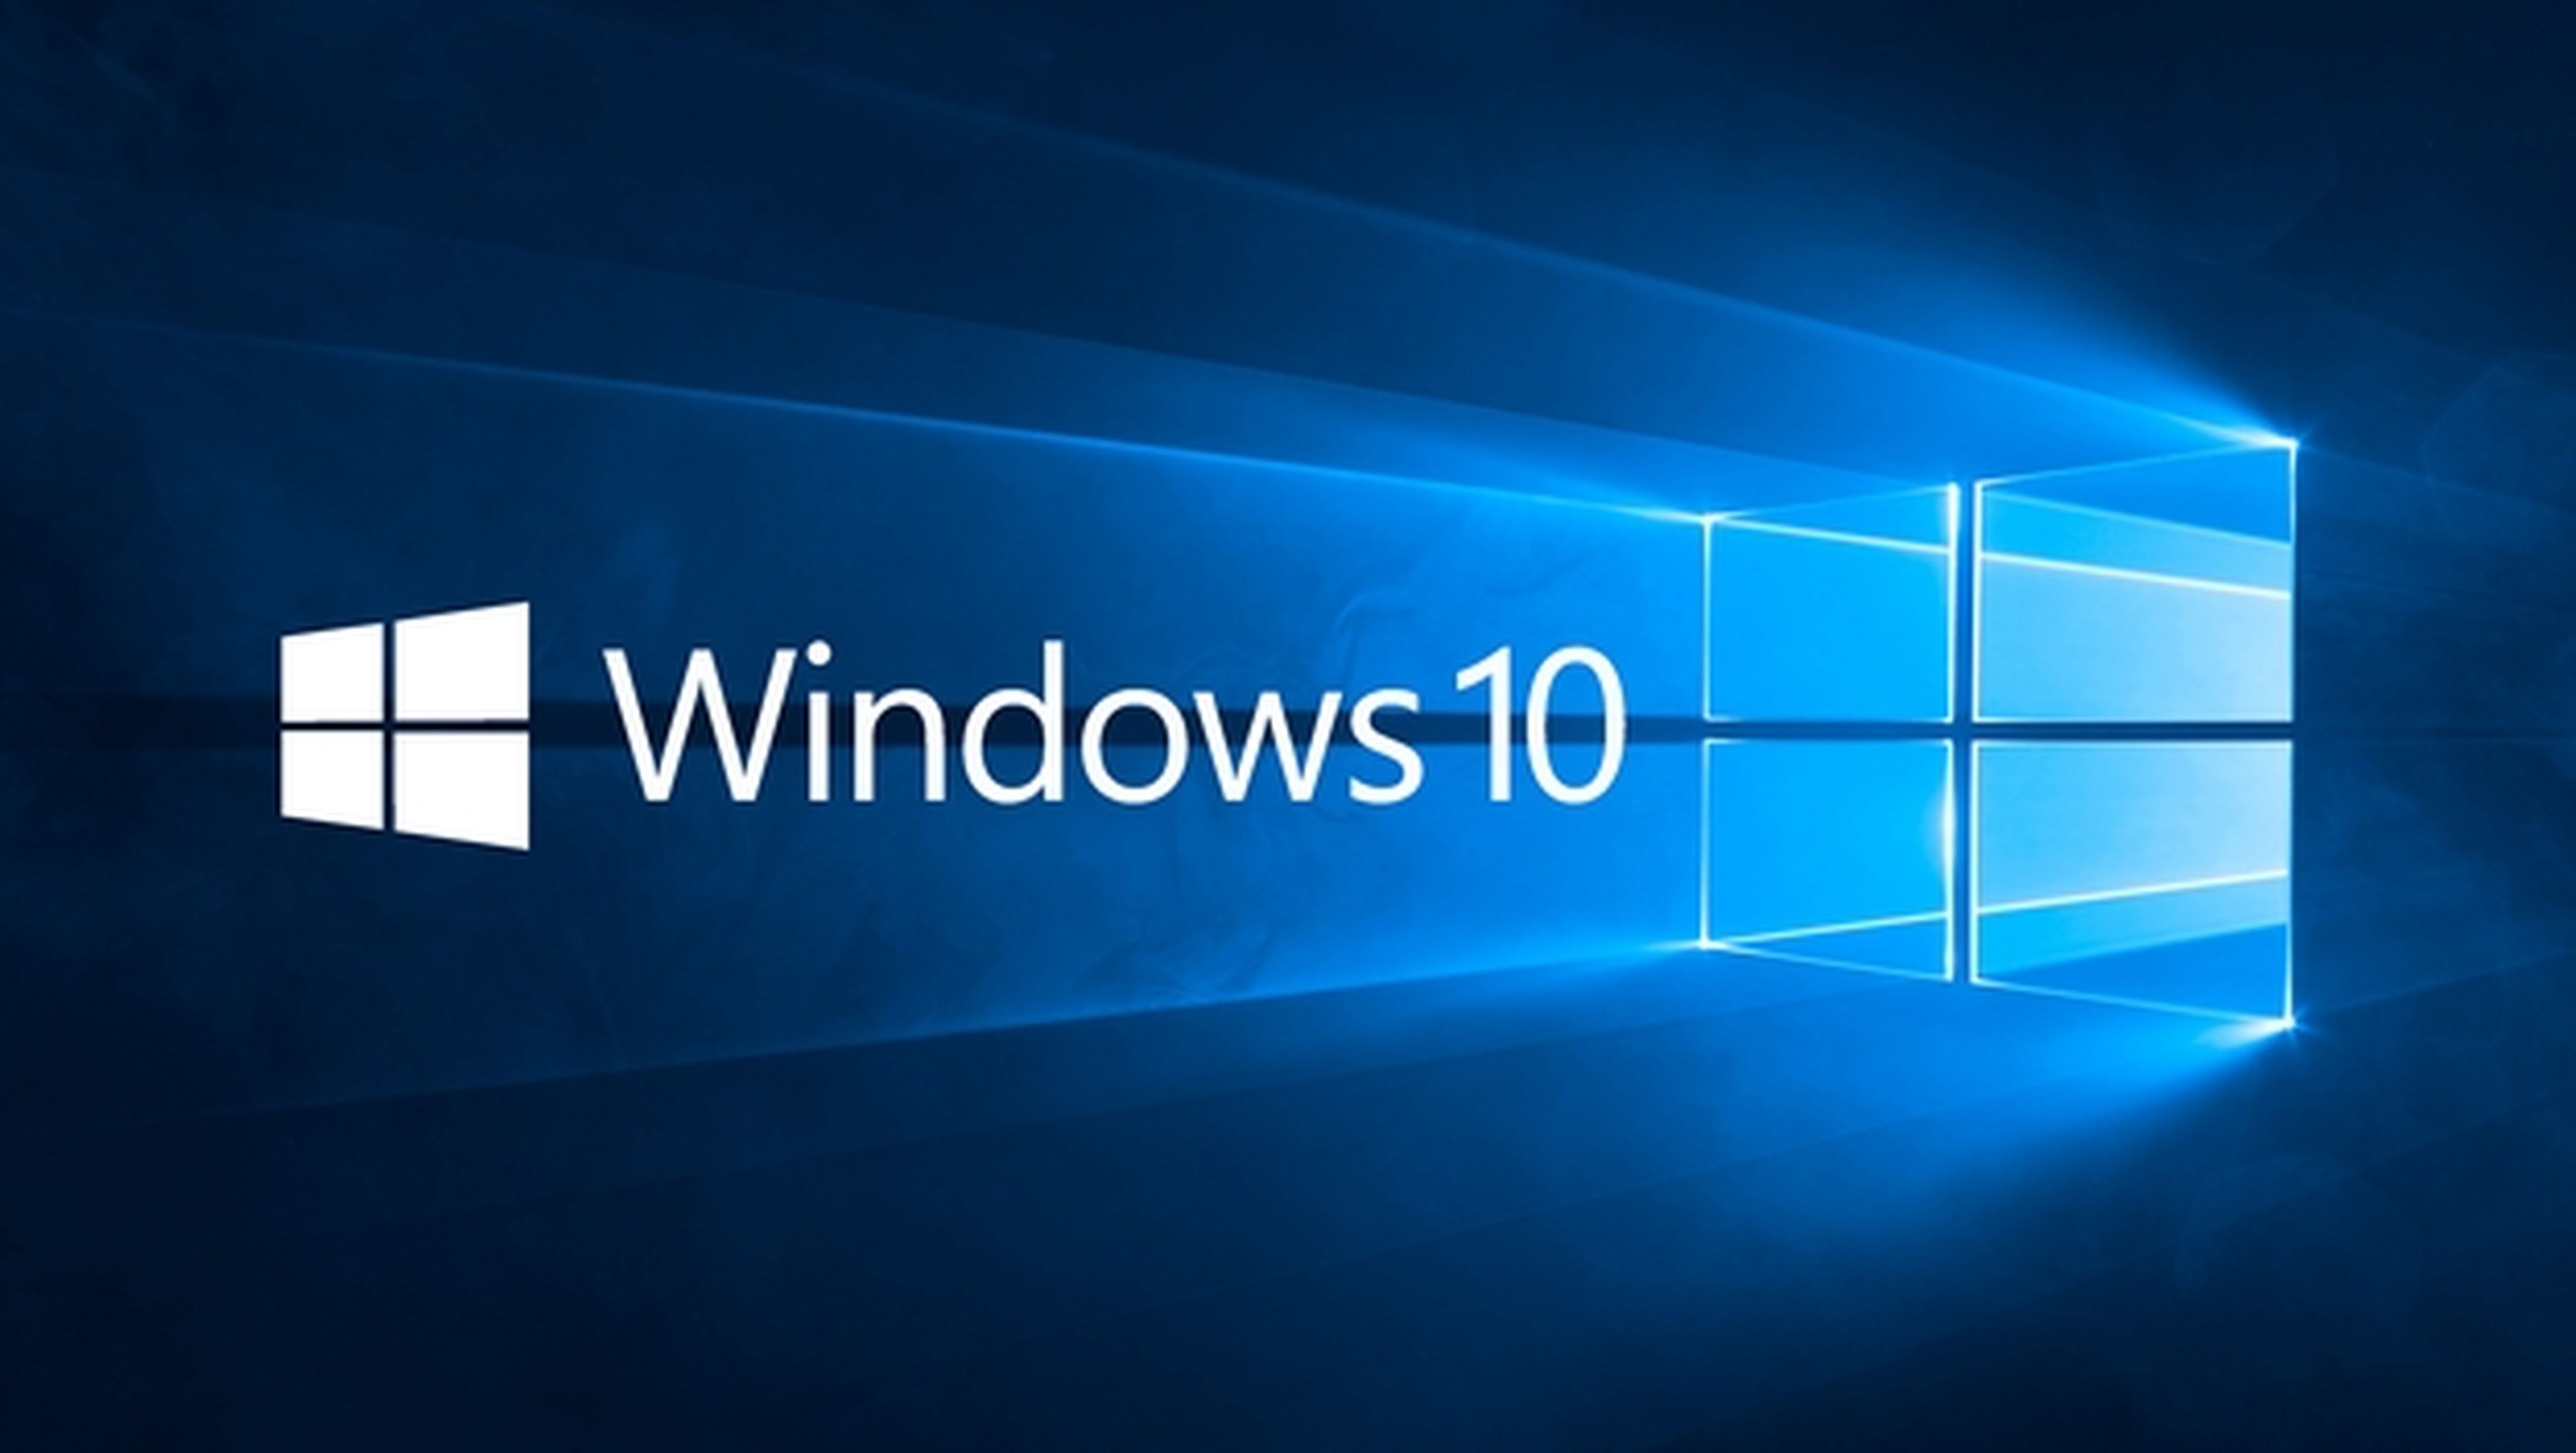 Windows 10 recibirá soporte y parches de seguridad durante 10 años.